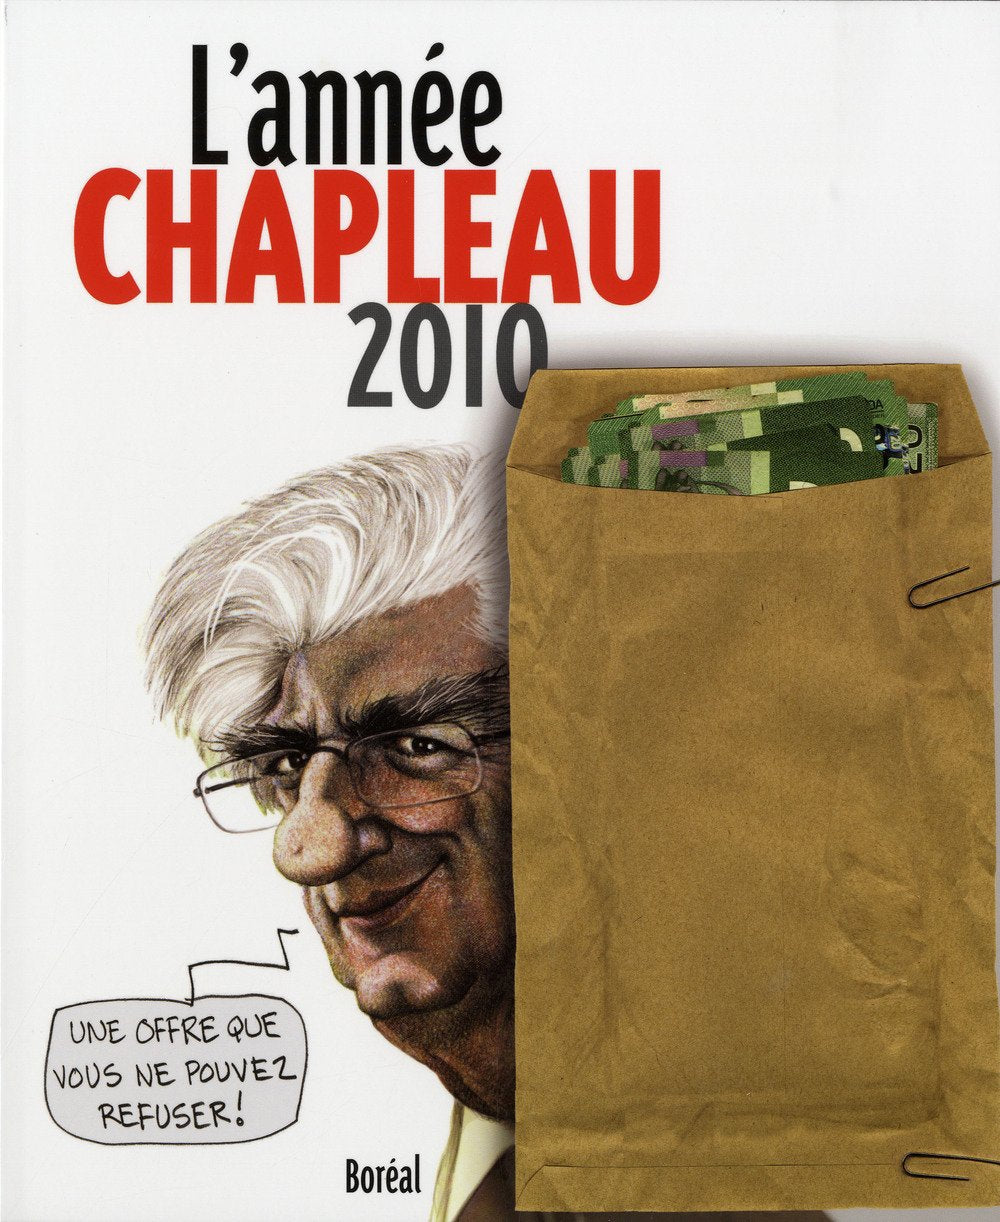 L'année Chapleau : L'année Chapleau 2010 - Serge Chapleau